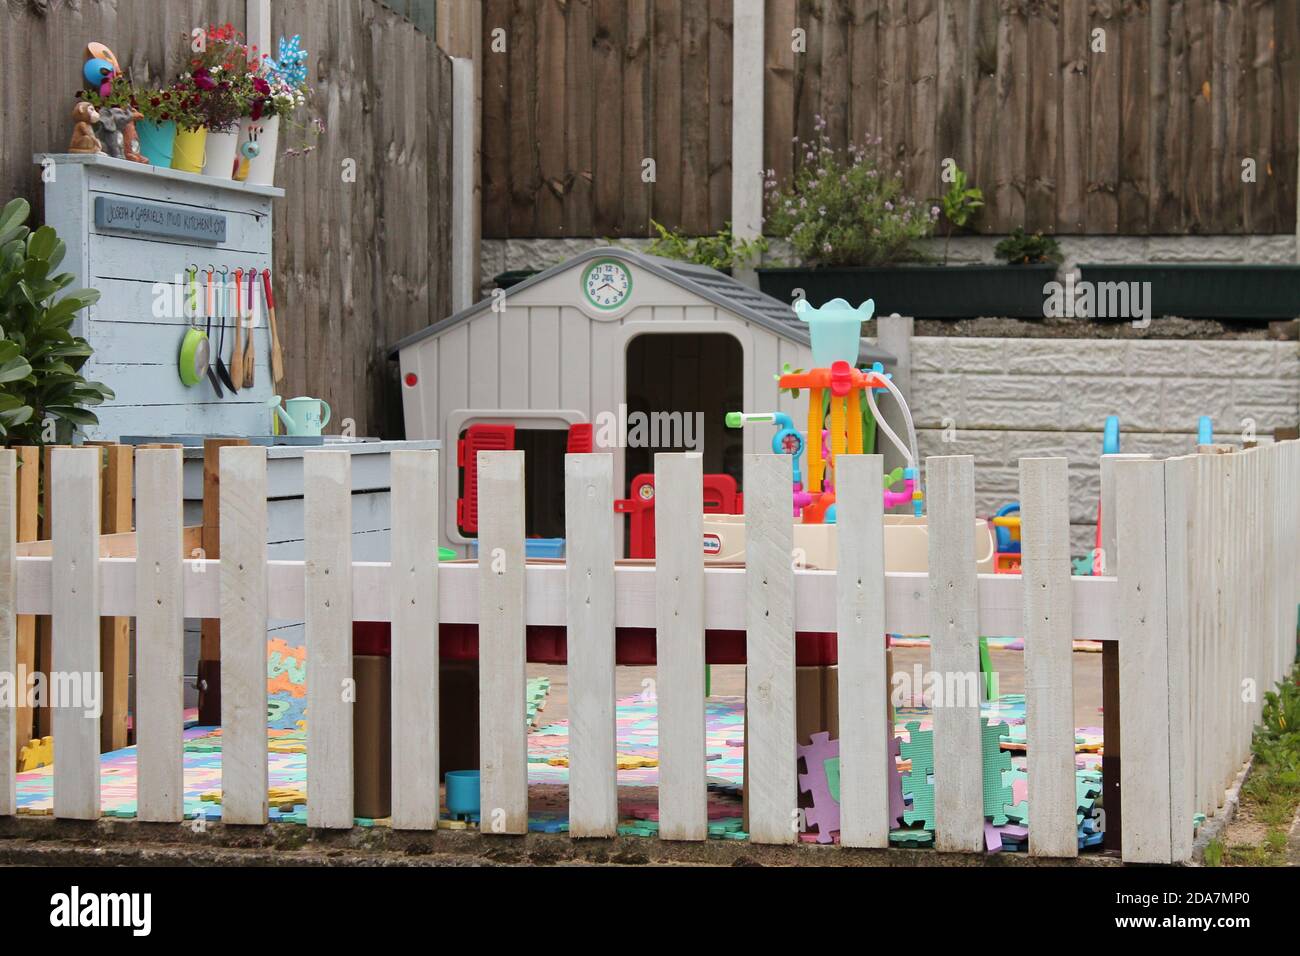 Kinder Spielplatz eingezäunt in einem Garten zu ermöglichen Kinder sicher spielen während UK Lockdown Stockfoto